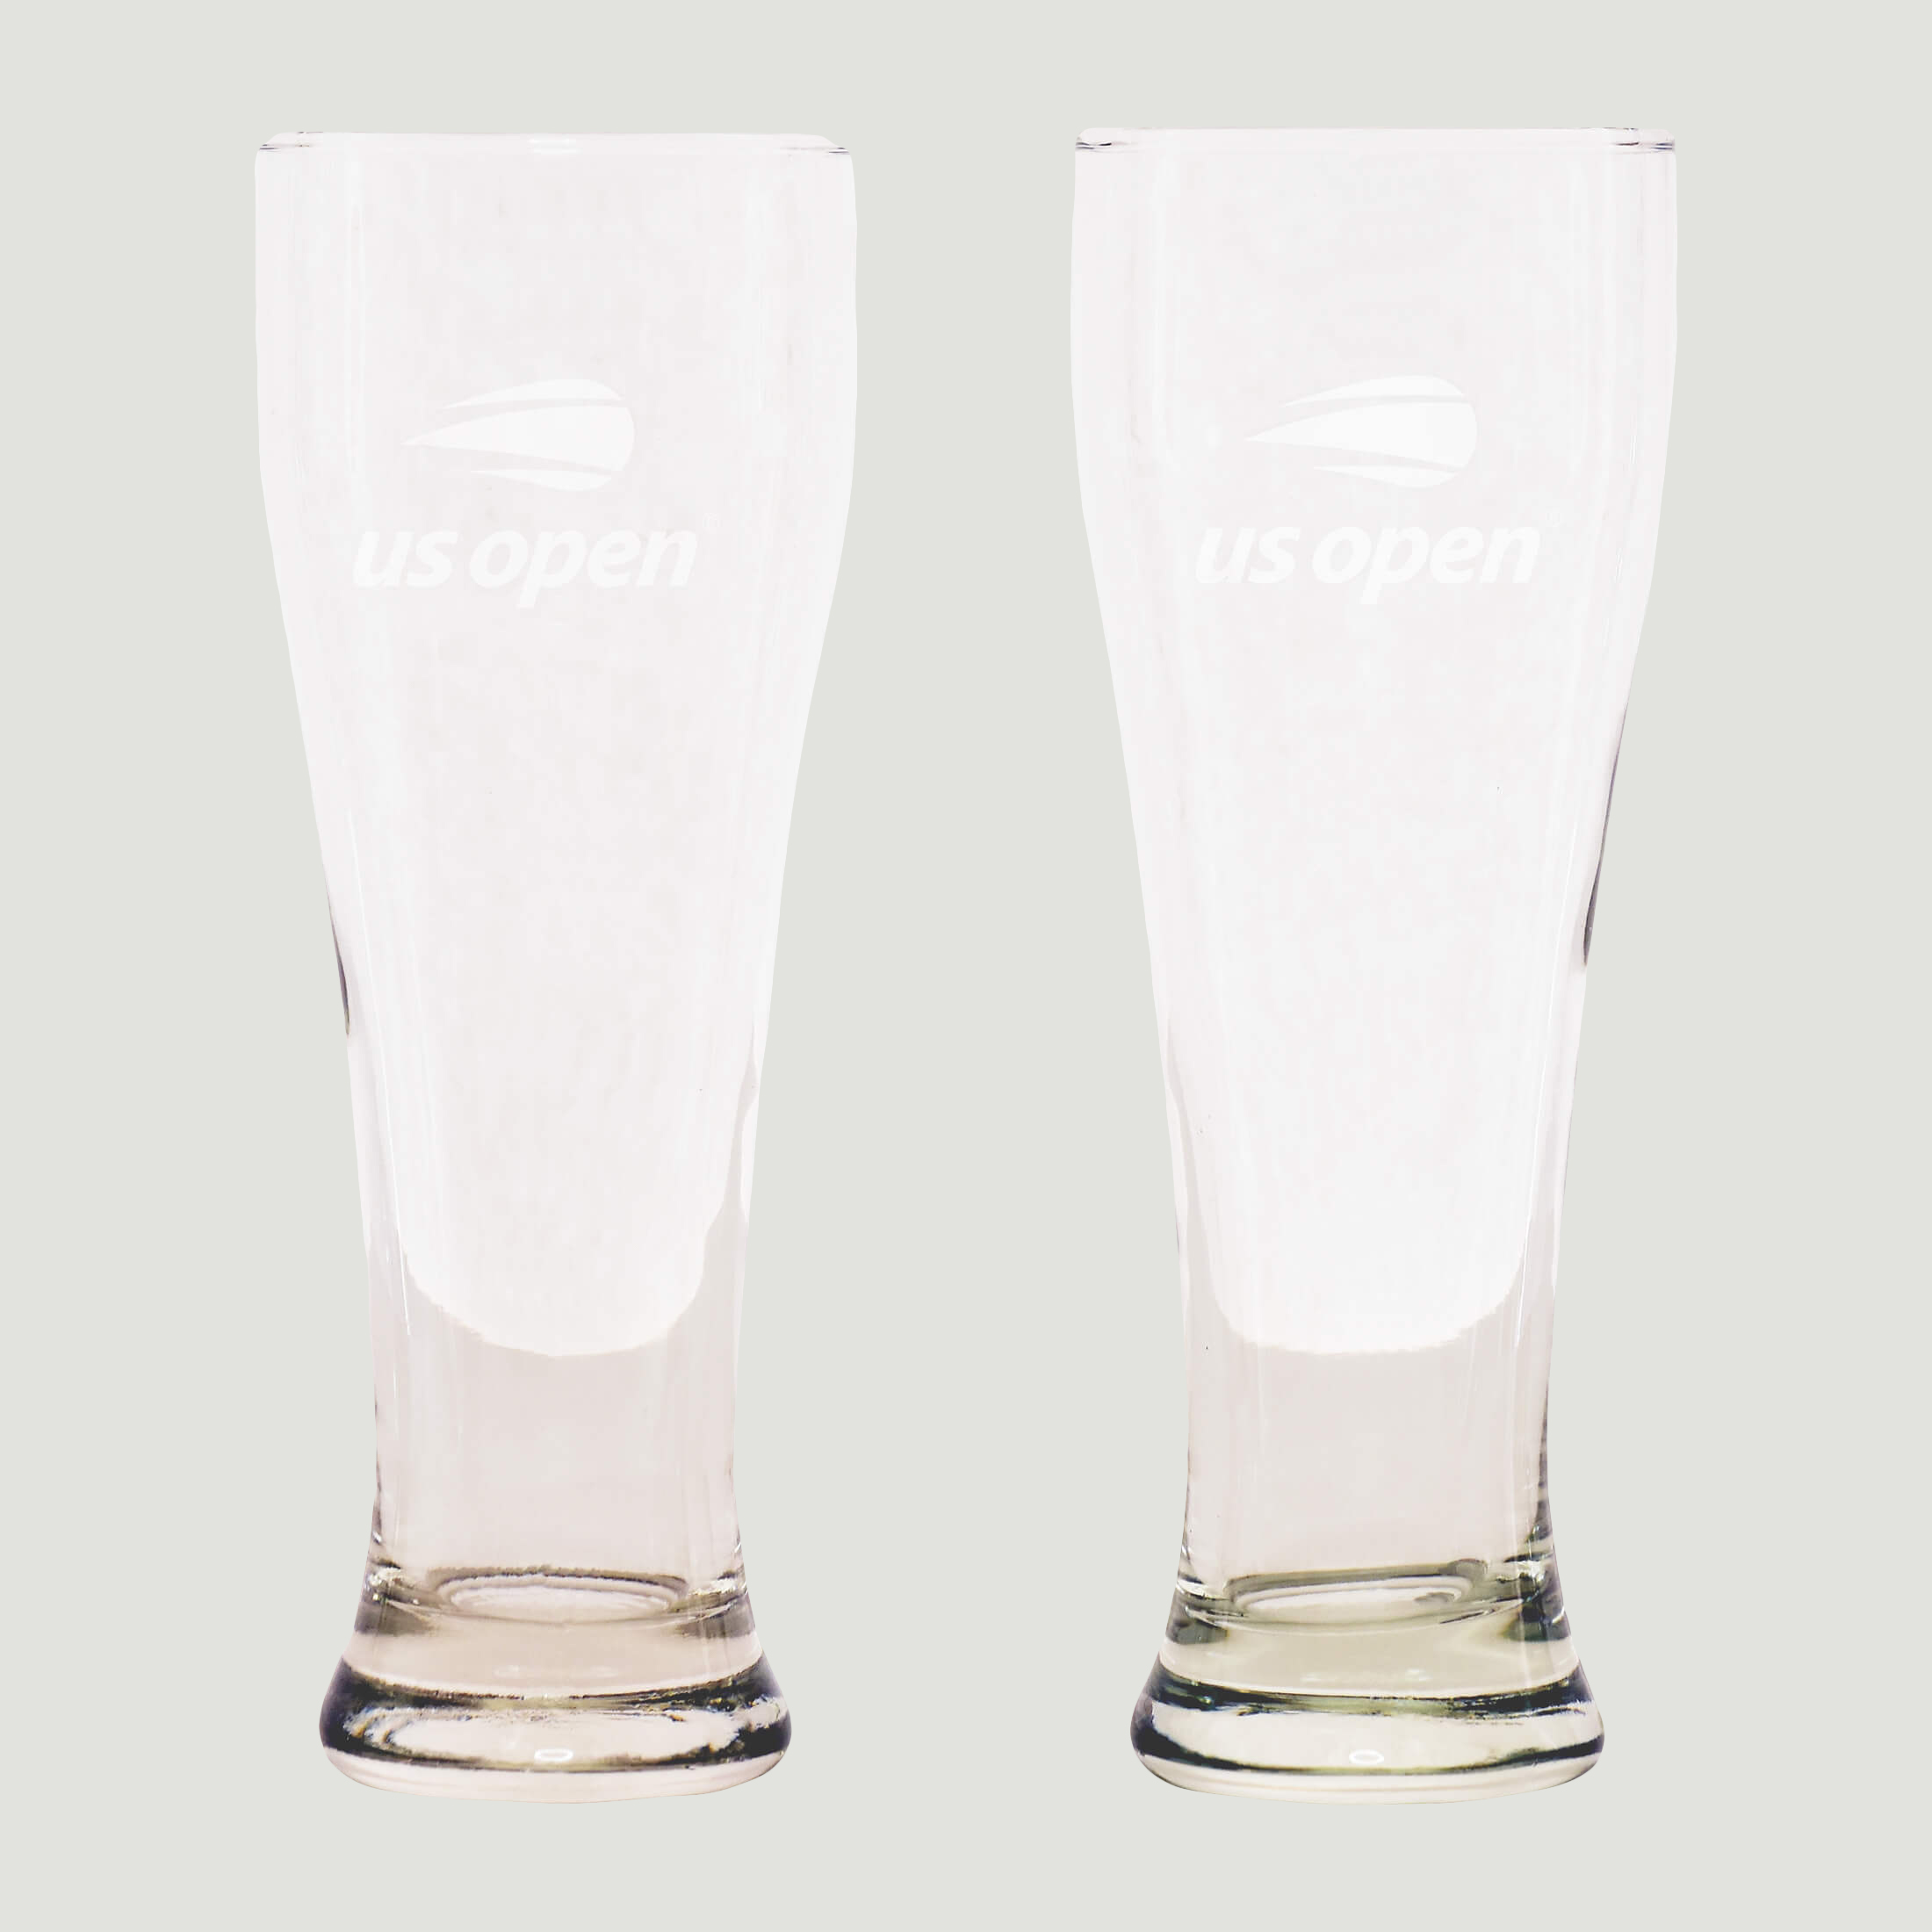 US Open Etched Logo Beer Glasses 24 Oz. - 2 Piece Set